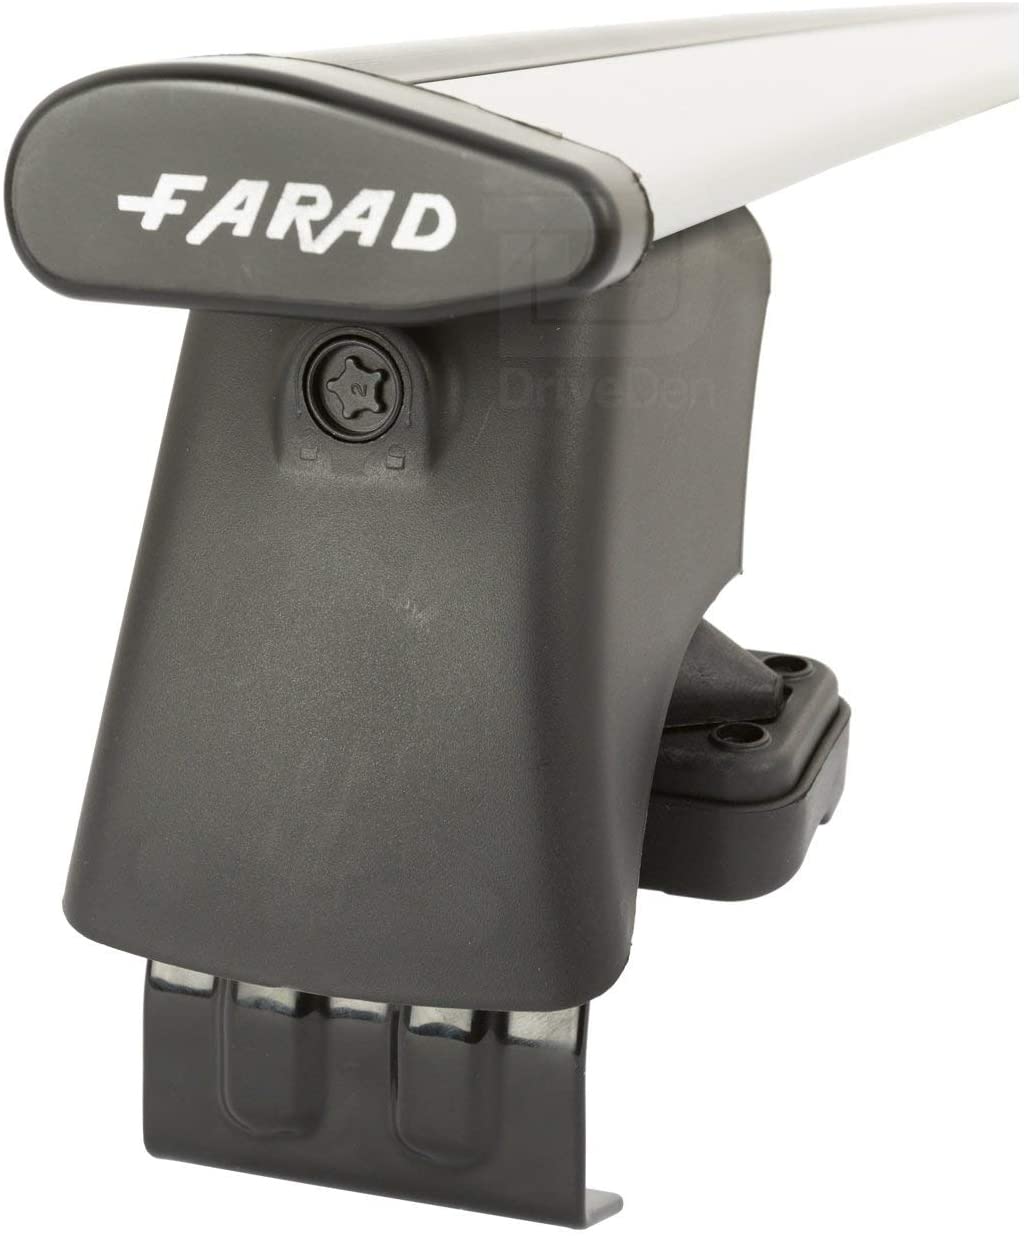 FARAD-Kit H2 per barre portatutto - Audi A8 2002-2009 (senza corrimano)